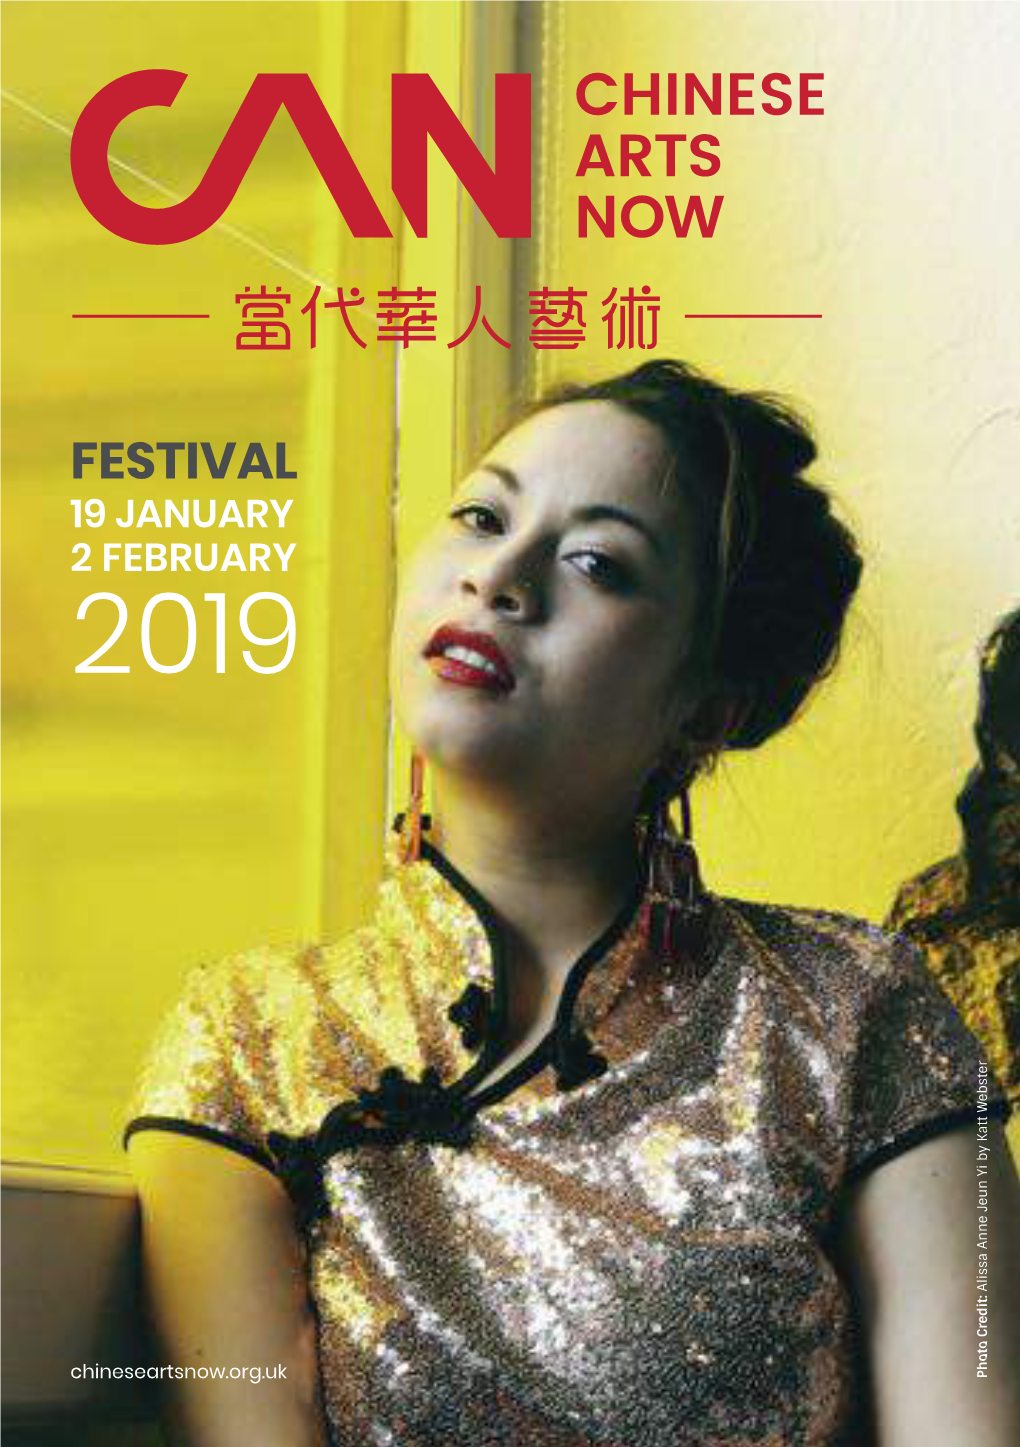 FESTIVAL 19 JANUARY 2 FEBRUARY 2019 Alissa Anne Jeun Yi by Katt Webster